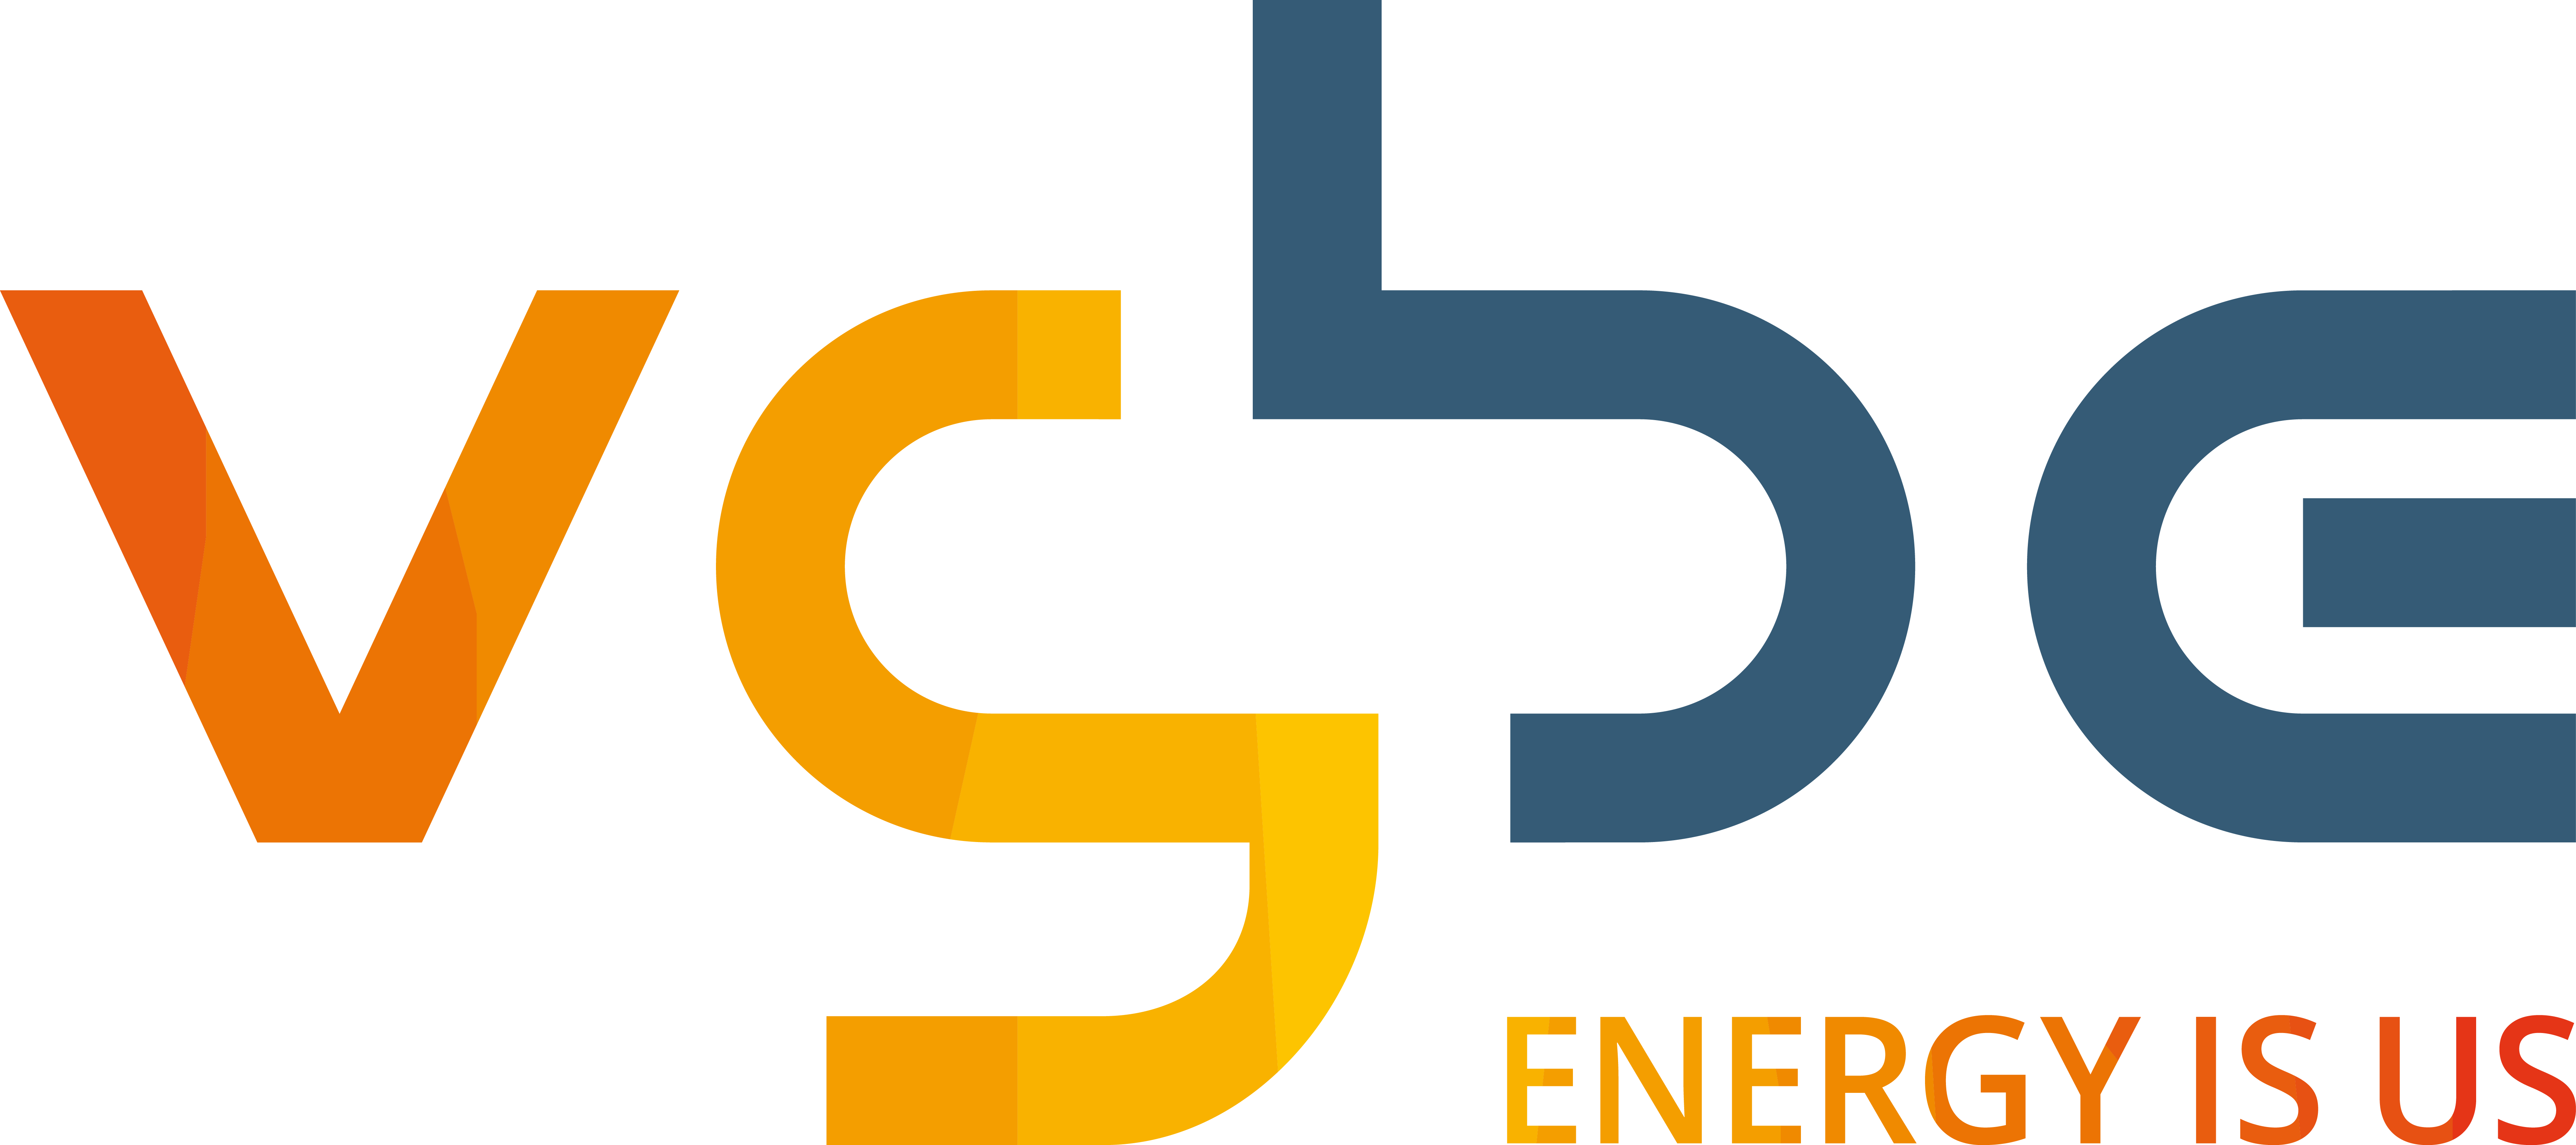 VGBE Energy